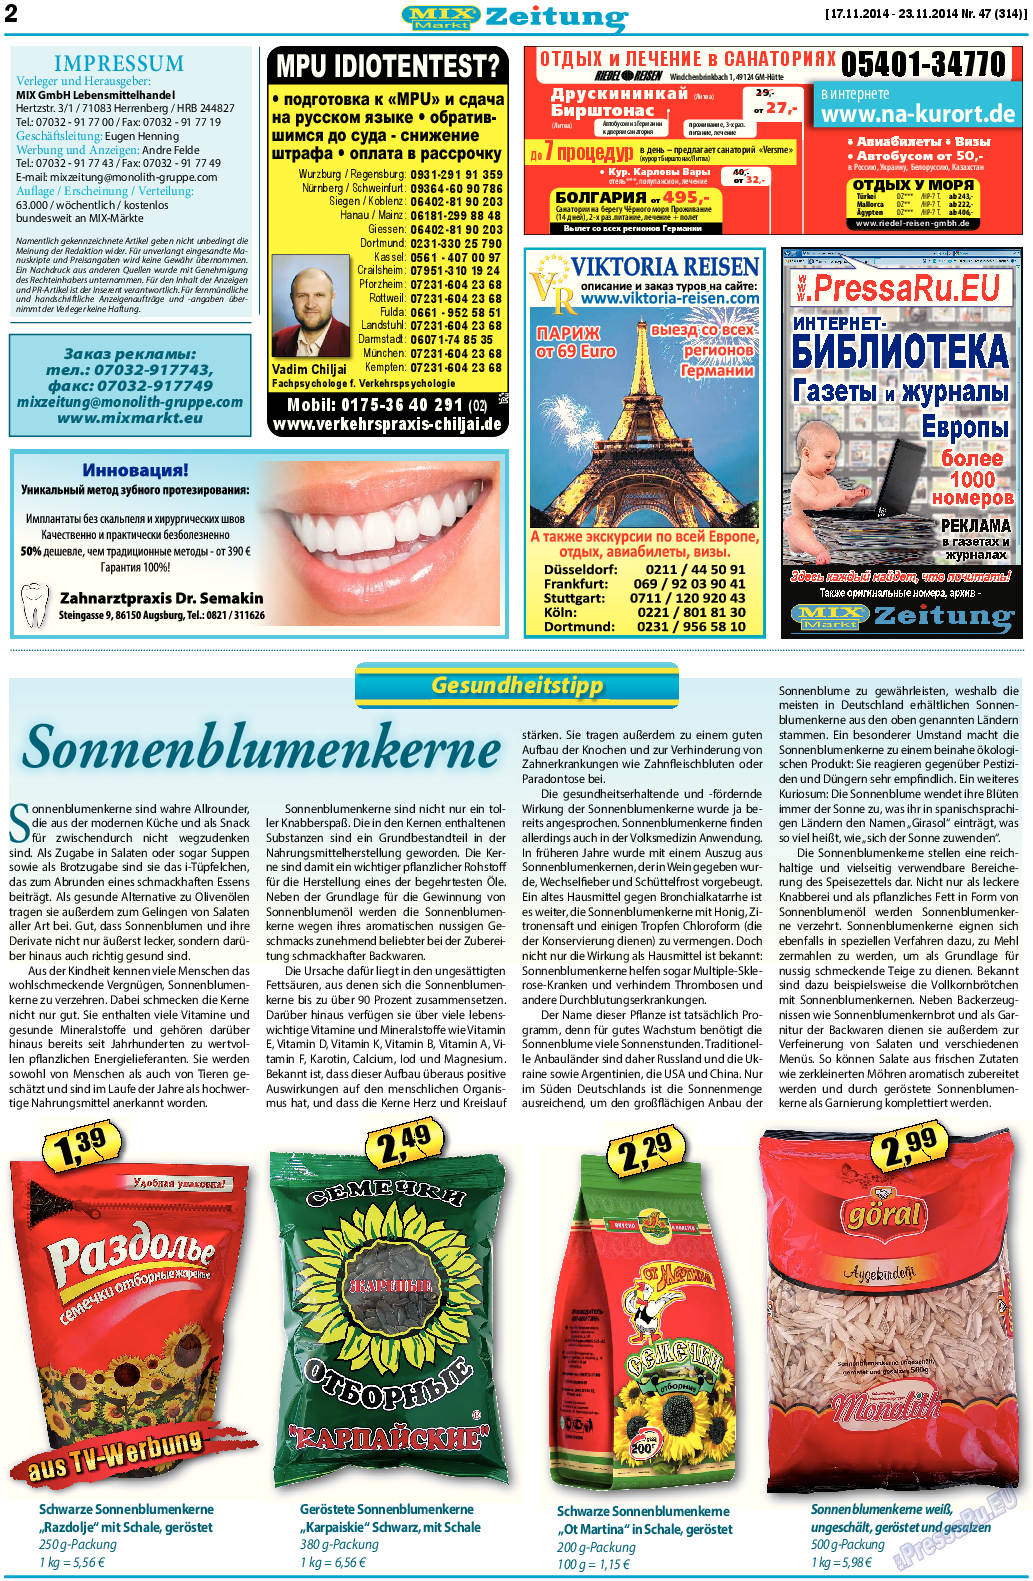 MIX-Markt Zeitung, газета. 2014 №47 стр.2